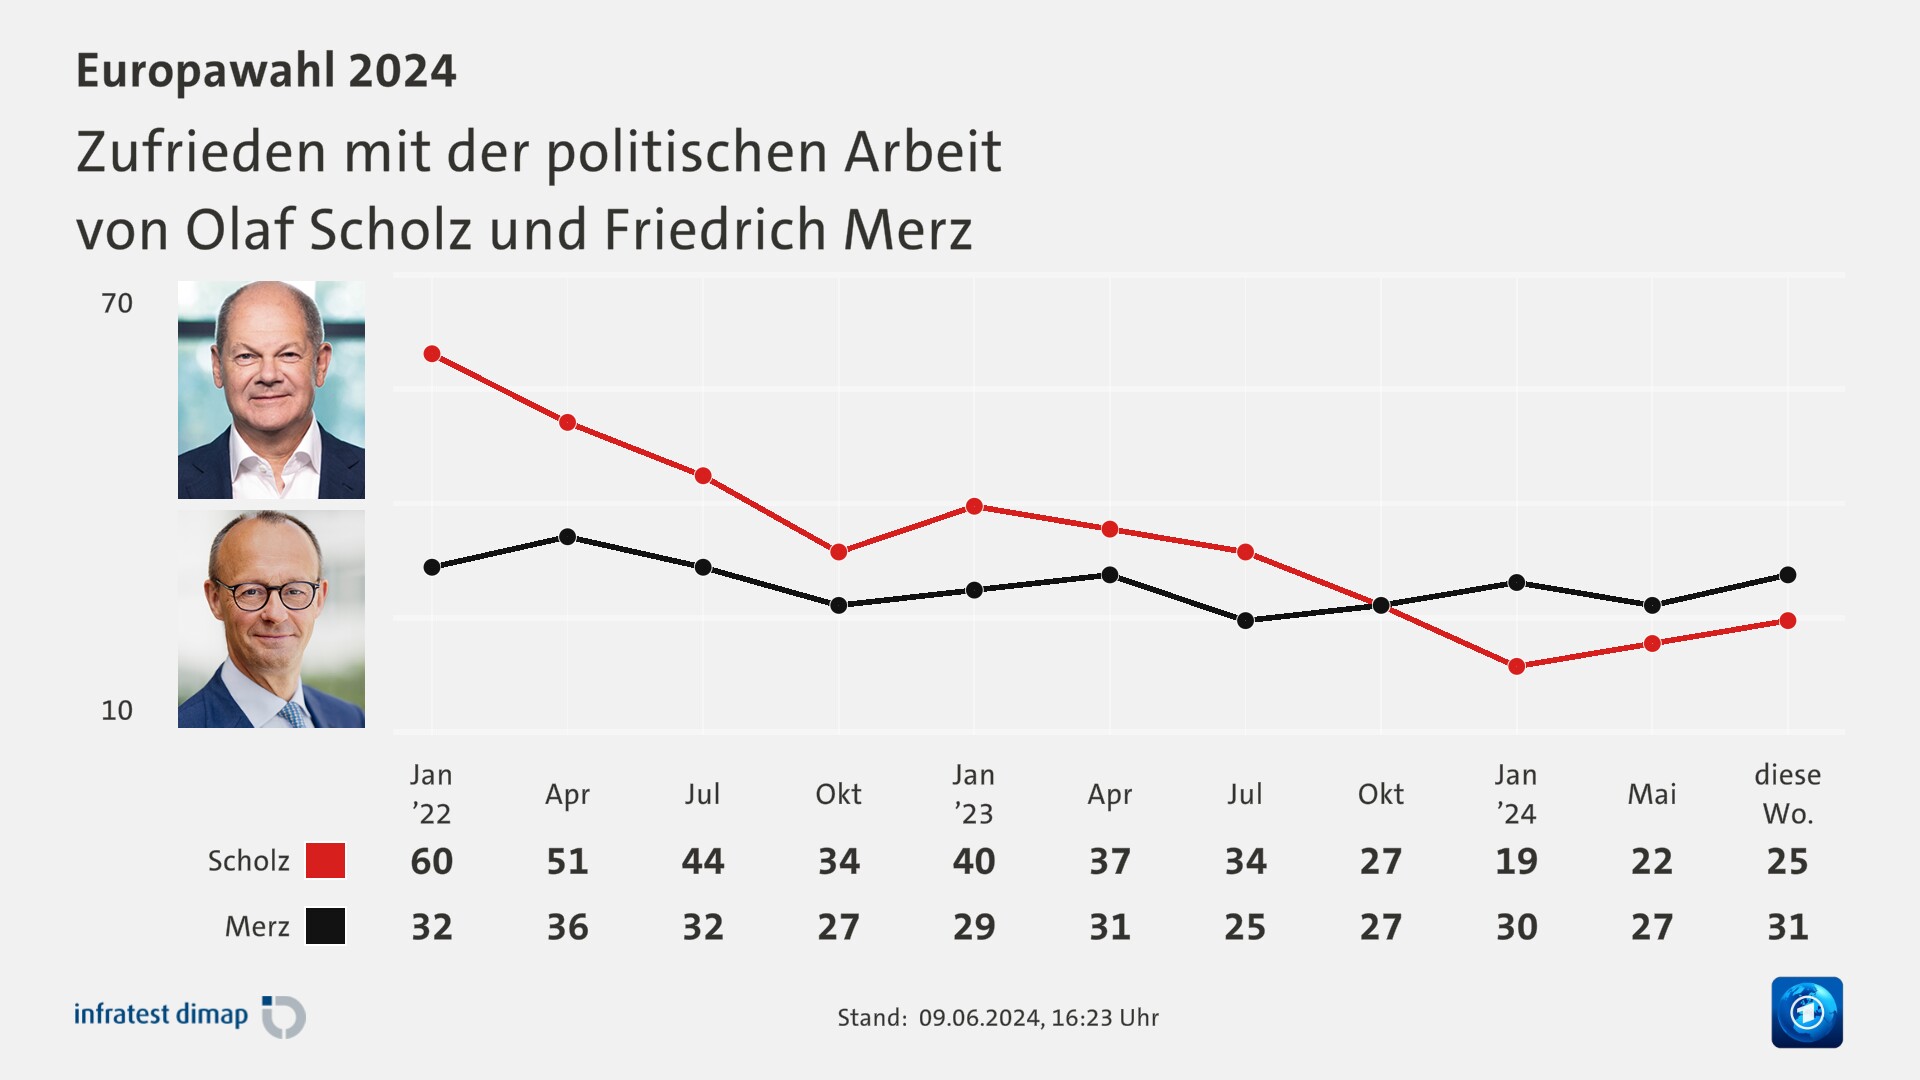 Zufrieden mit der politischen Arbeit|von Olaf Scholz und Friedrich Merz